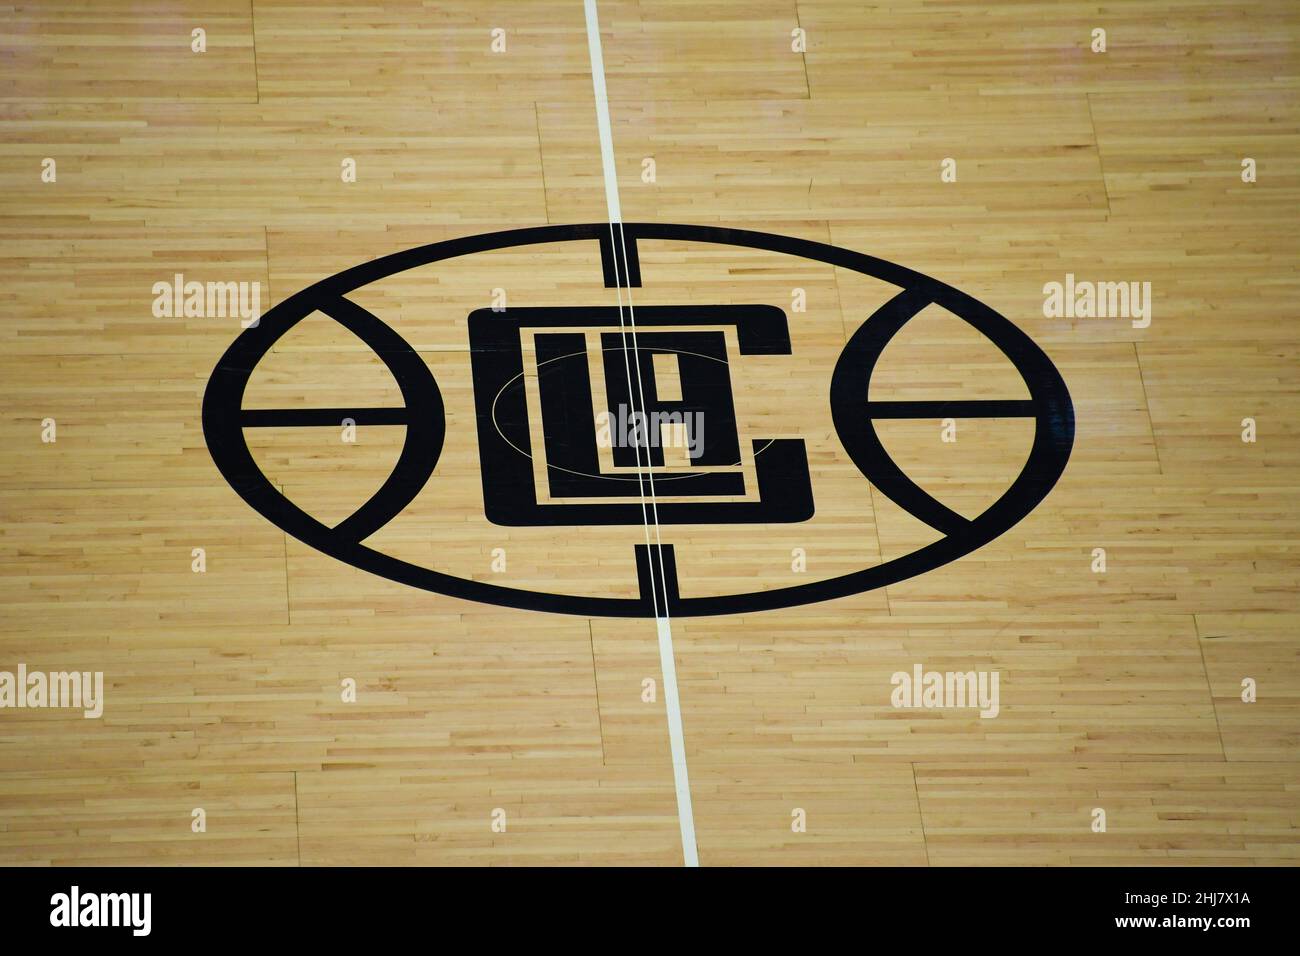 Vue détaillée du logo LA Clippers sur le terrain central lors d'un match de basket-ball de la NBA entre la Clippers et les Brooklyn nets, le lundi 27 décembre 20 Banque D'Images